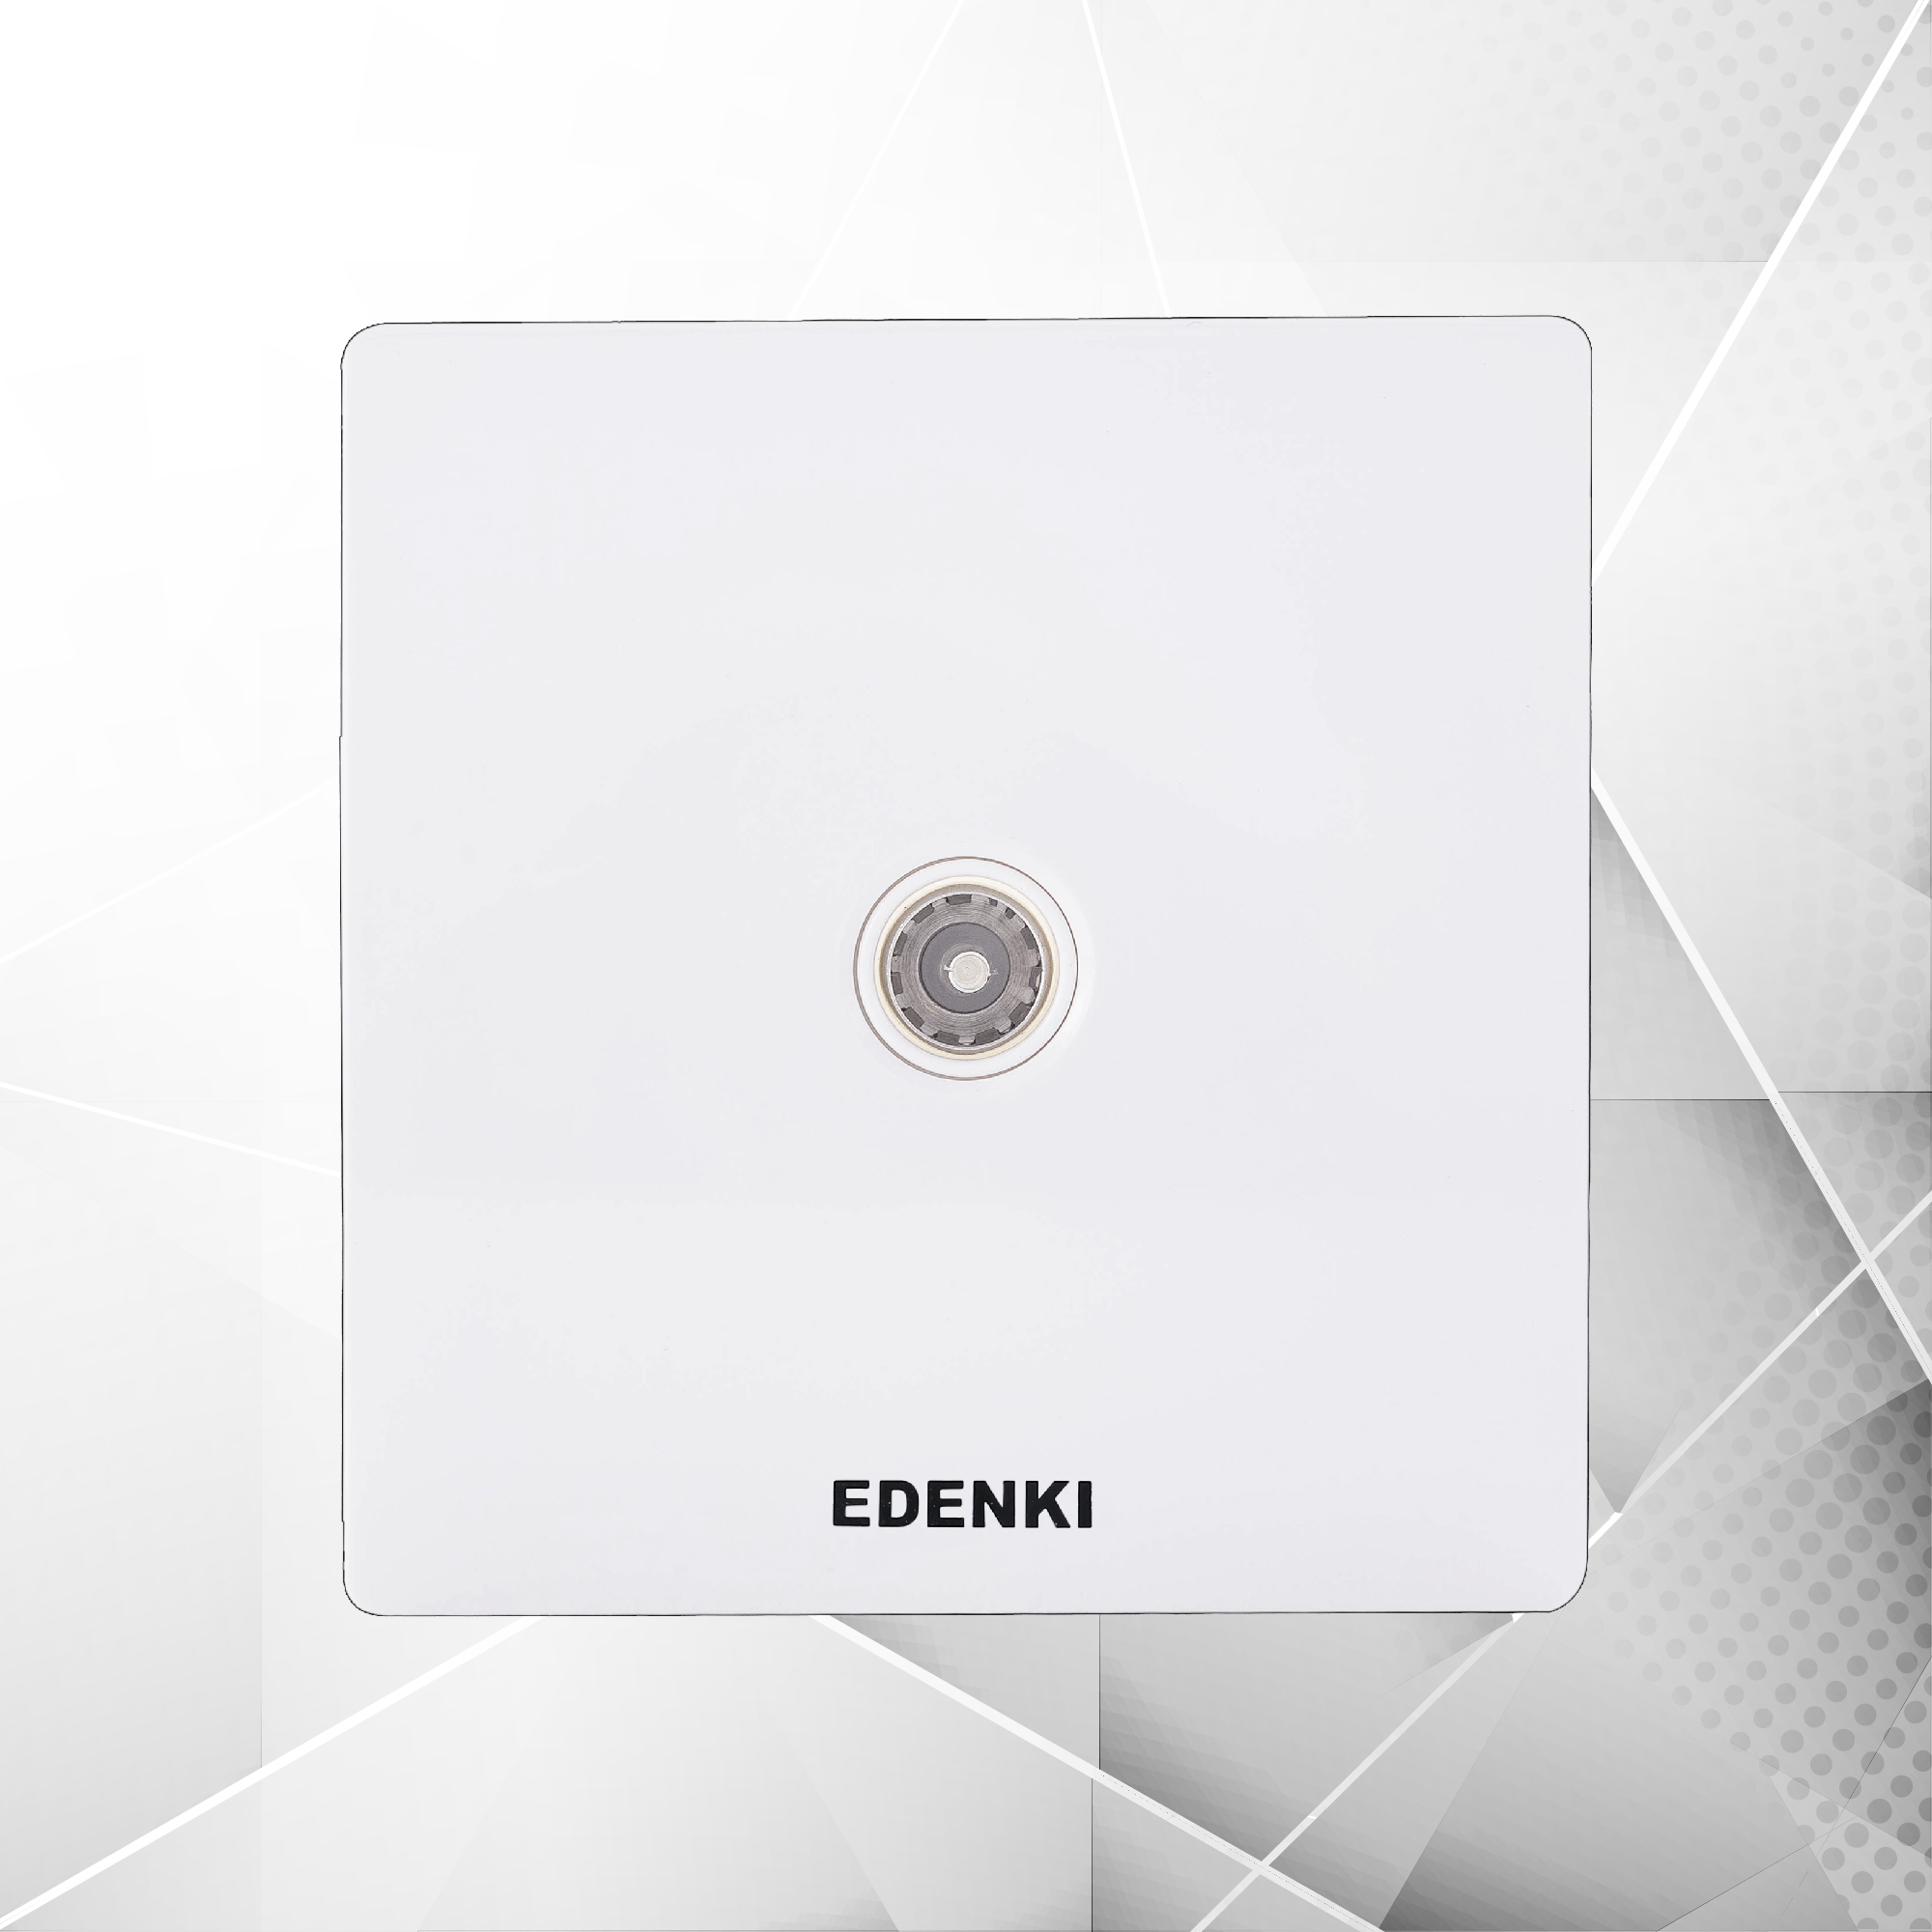 Bộ ổ cắm tivi đơn Edenki EE-TV01